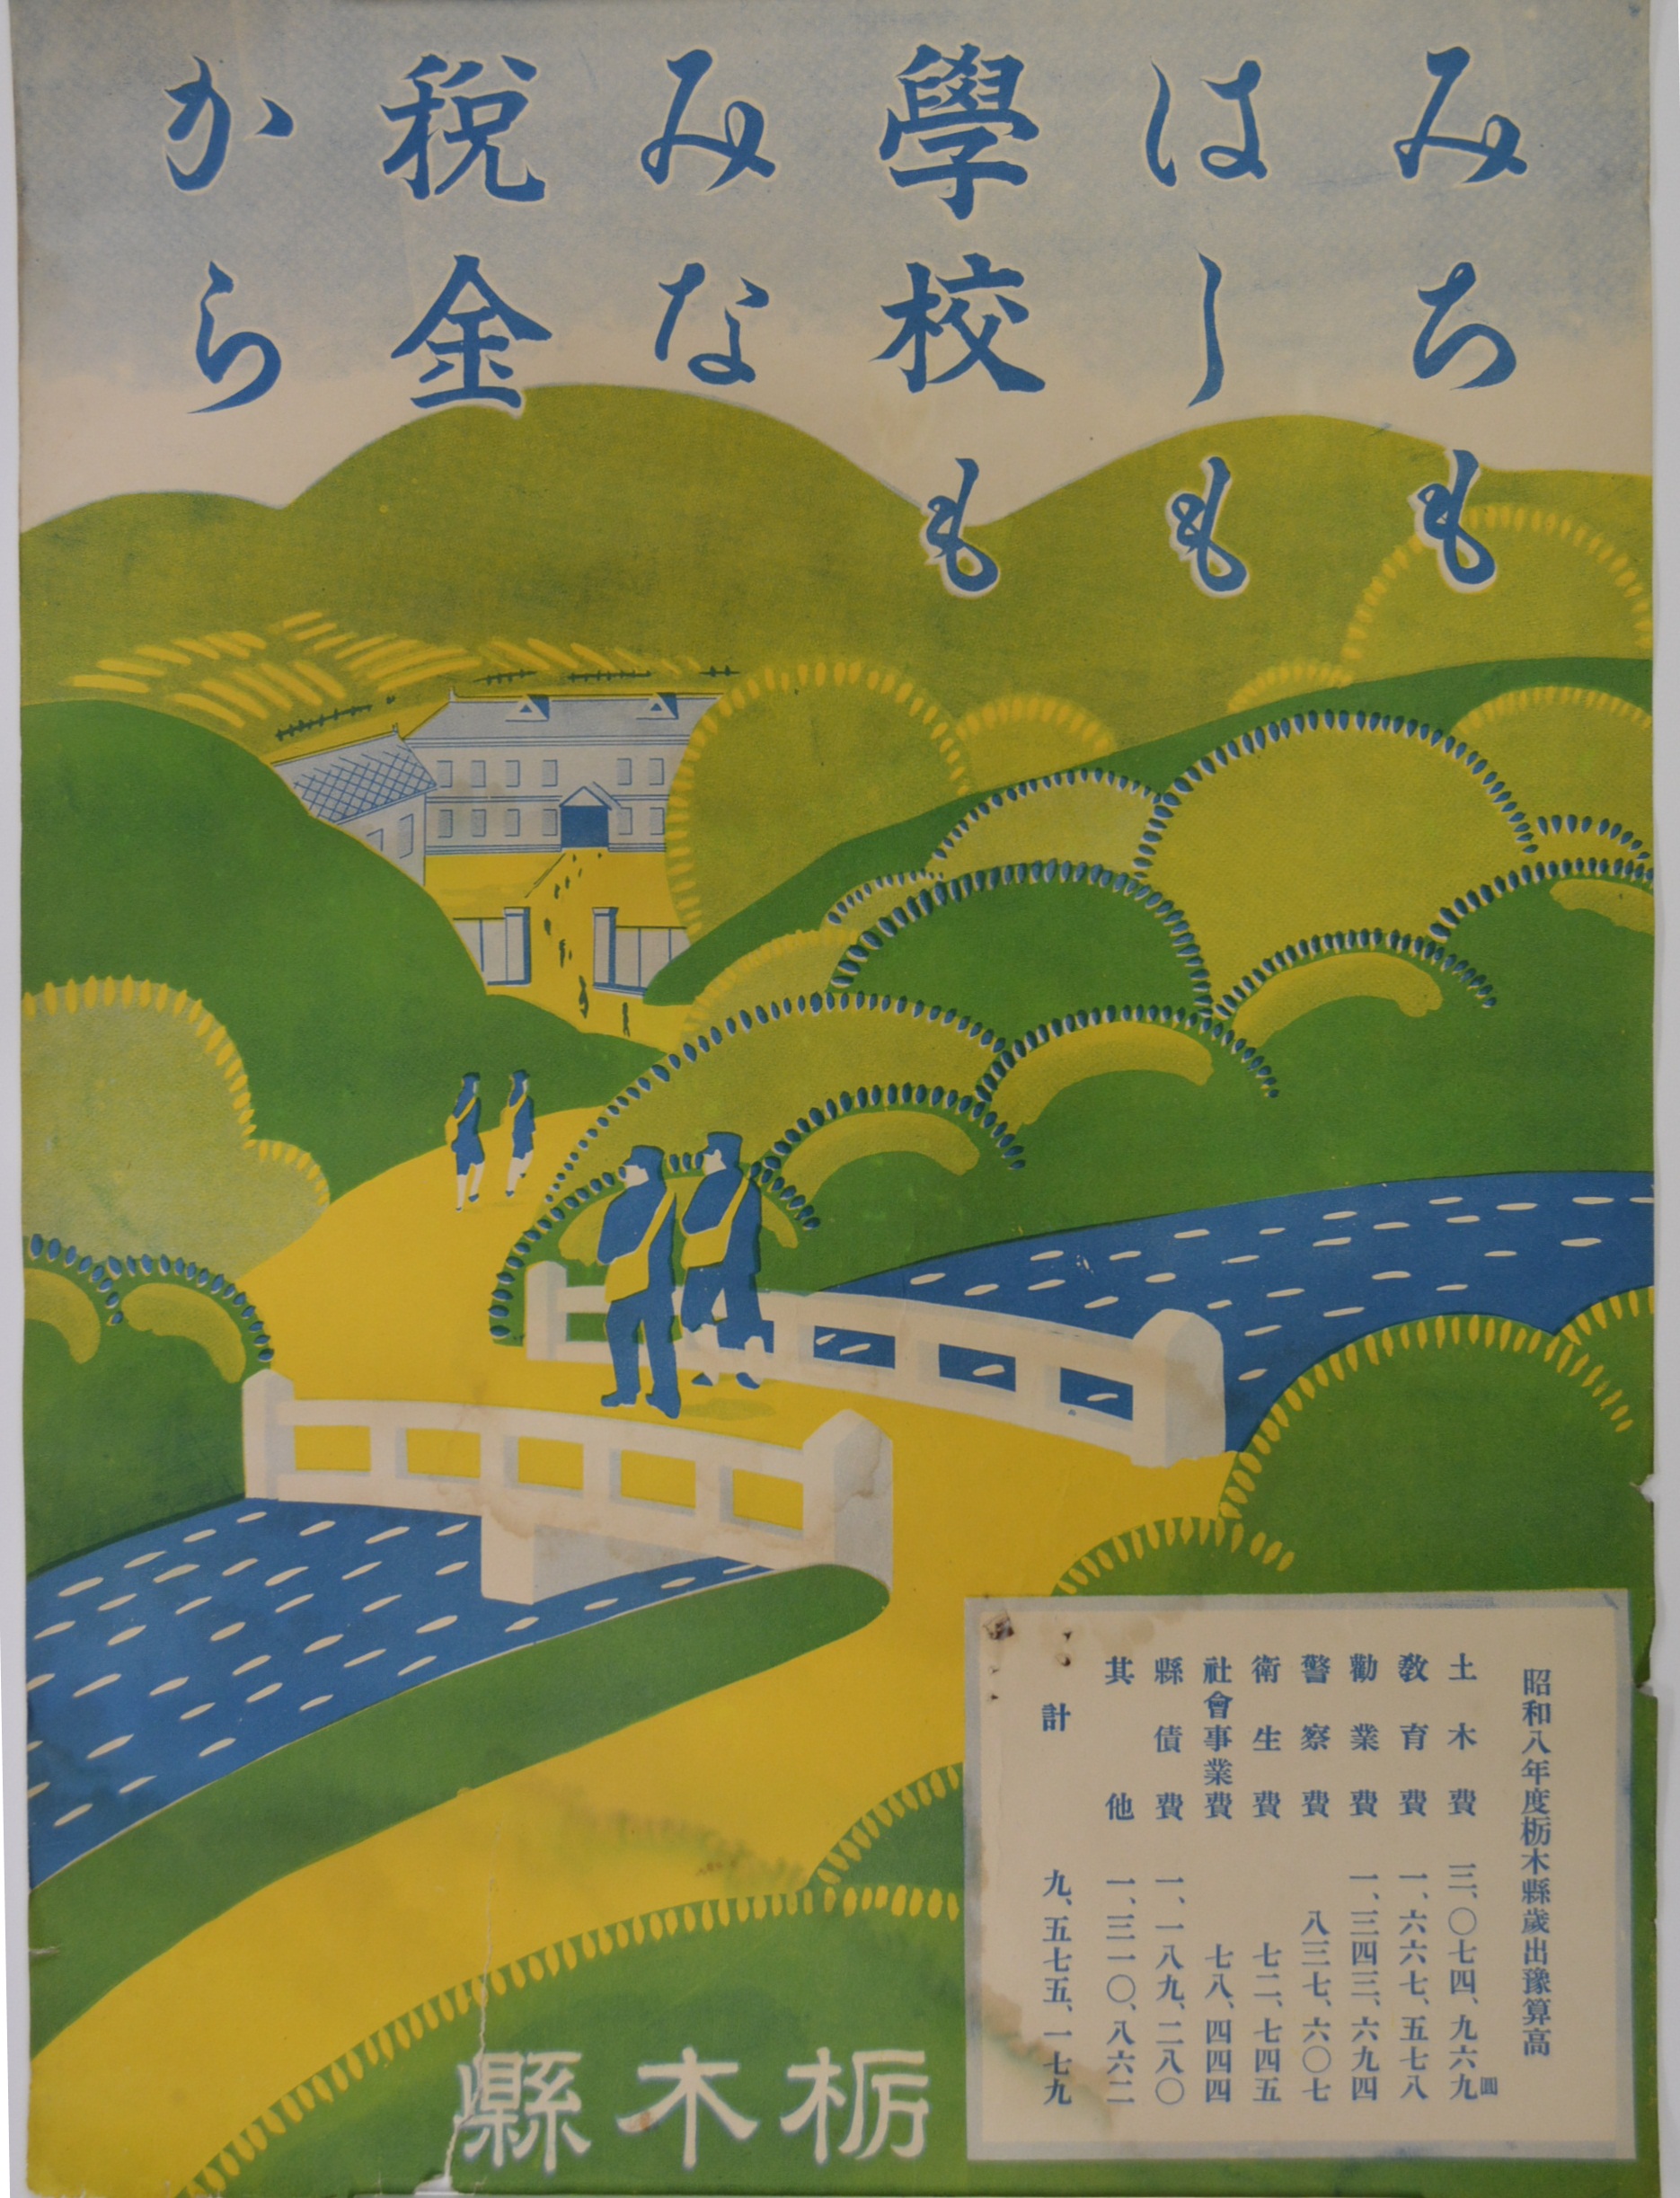 栃木県の納税ポスター